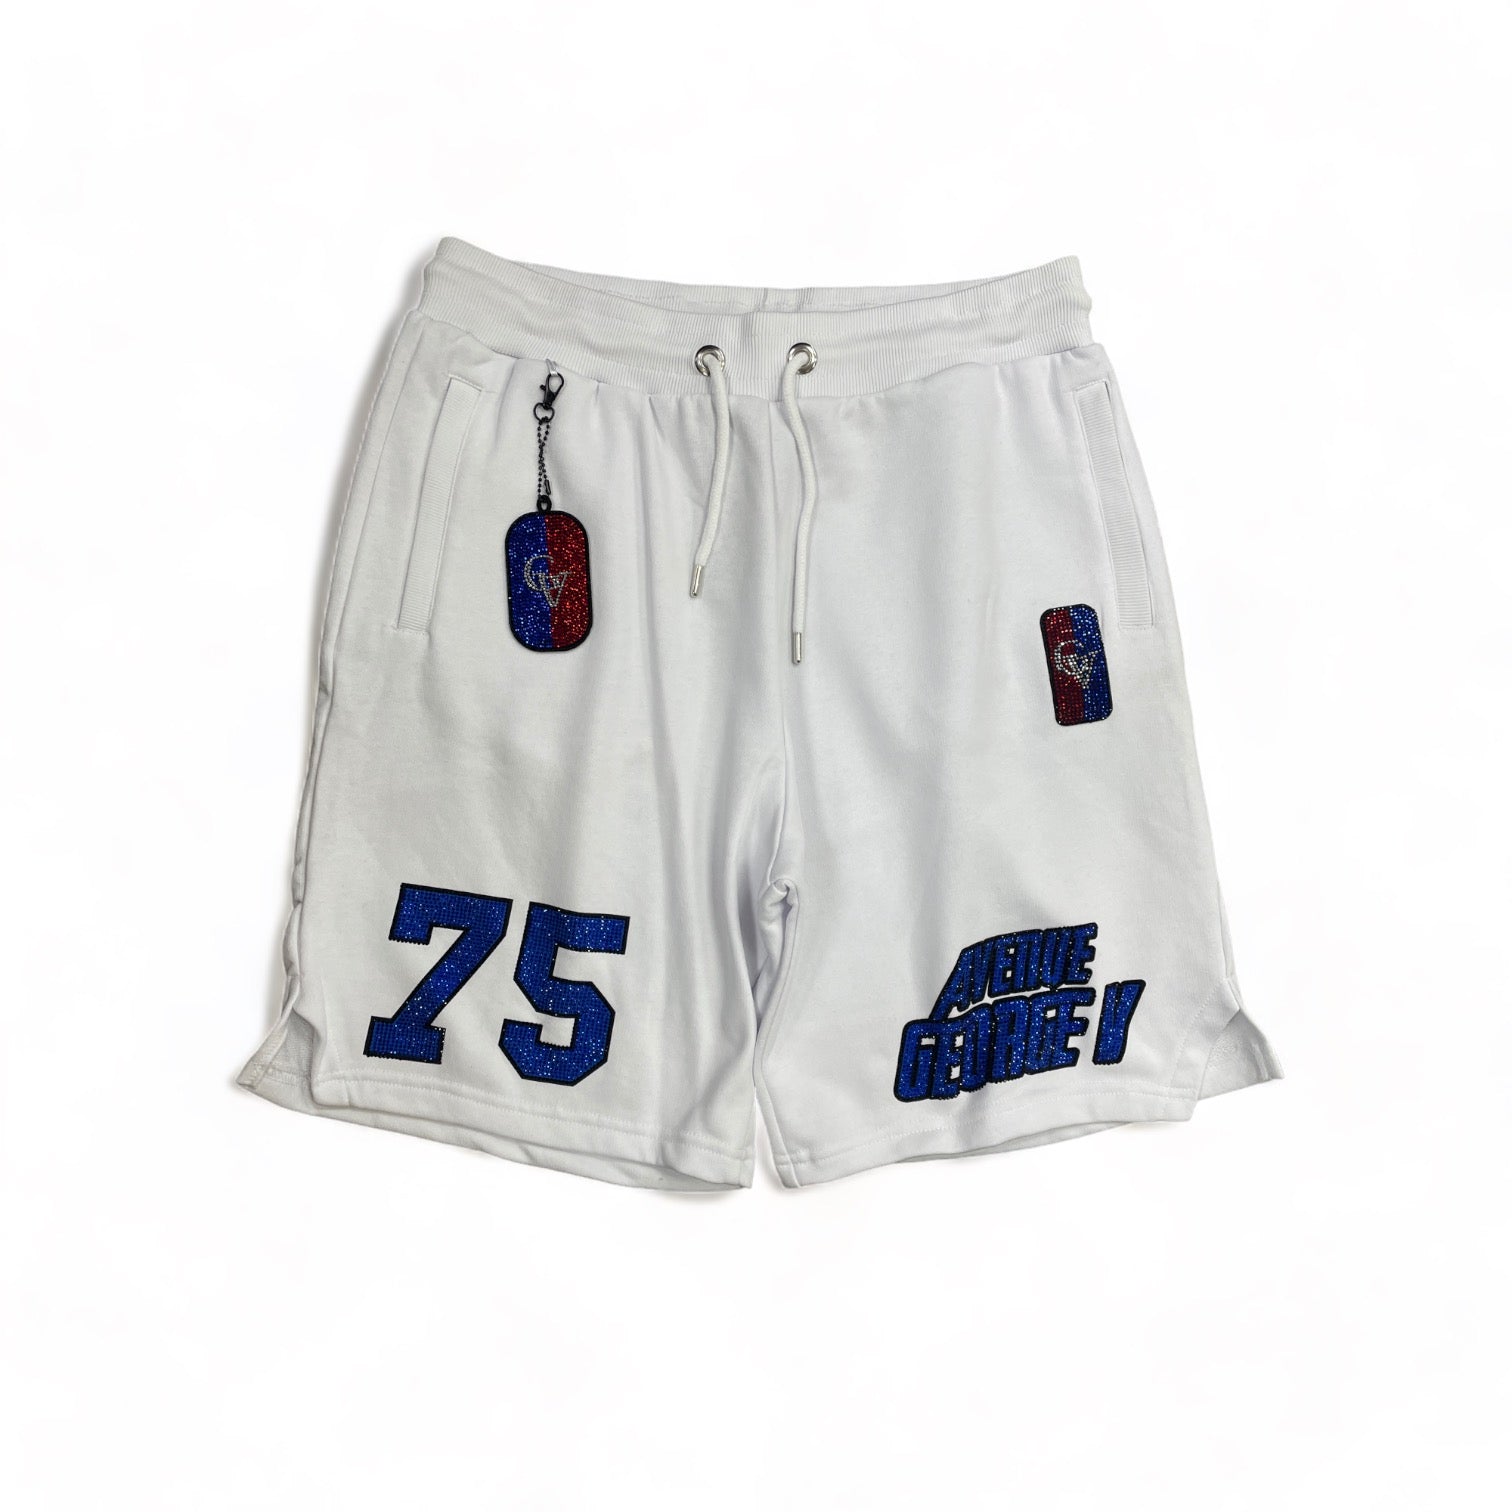 George V 75 Shorts